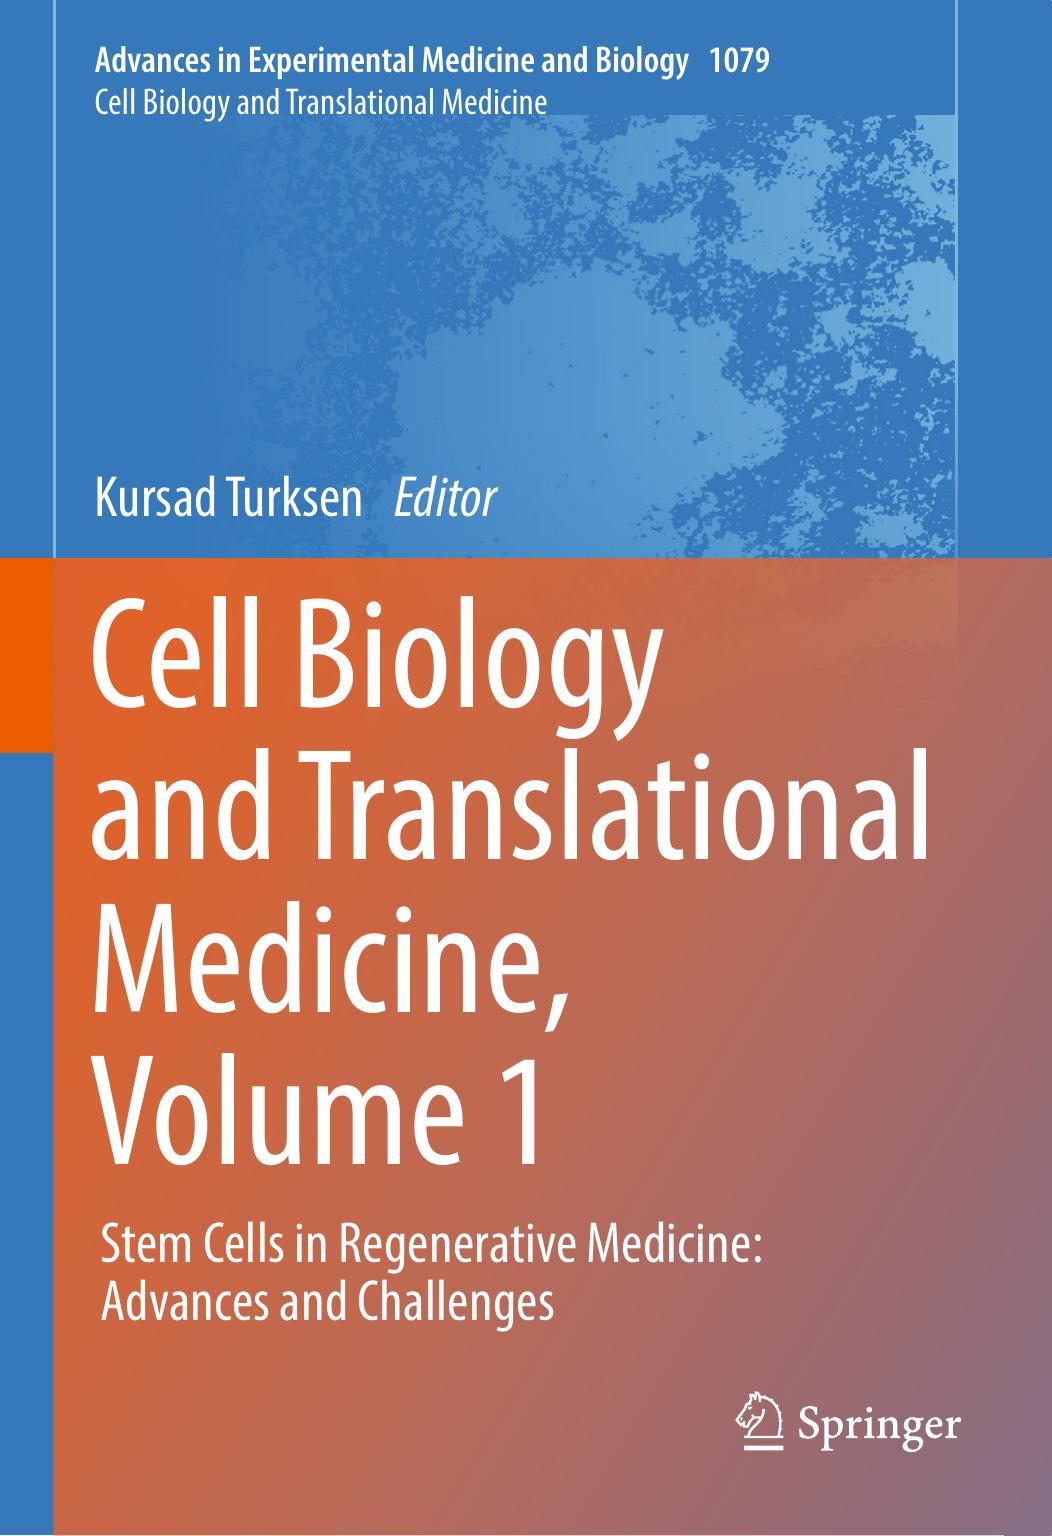 Cell Biology and Translational Medicine, Volume 1 Stem Cells in Regenerative Medicine Advances and Challenges 2018